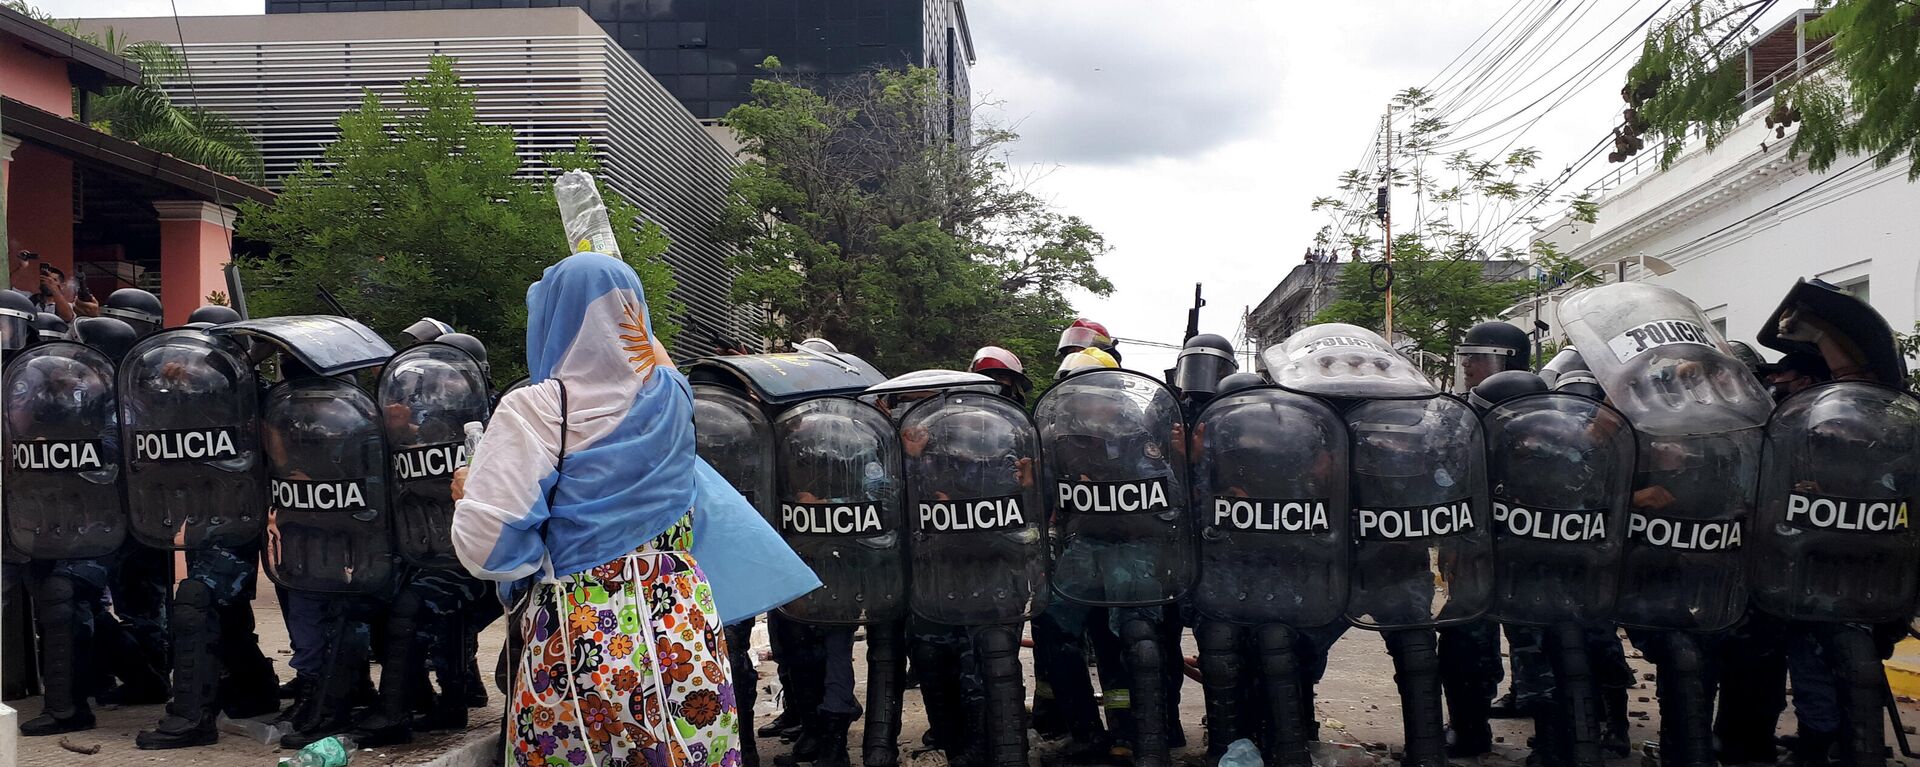 Una mujer se manifiesta frente a la Policía en la provincia argentina de Formosa - Sputnik Mundo, 1920, 08.03.2021